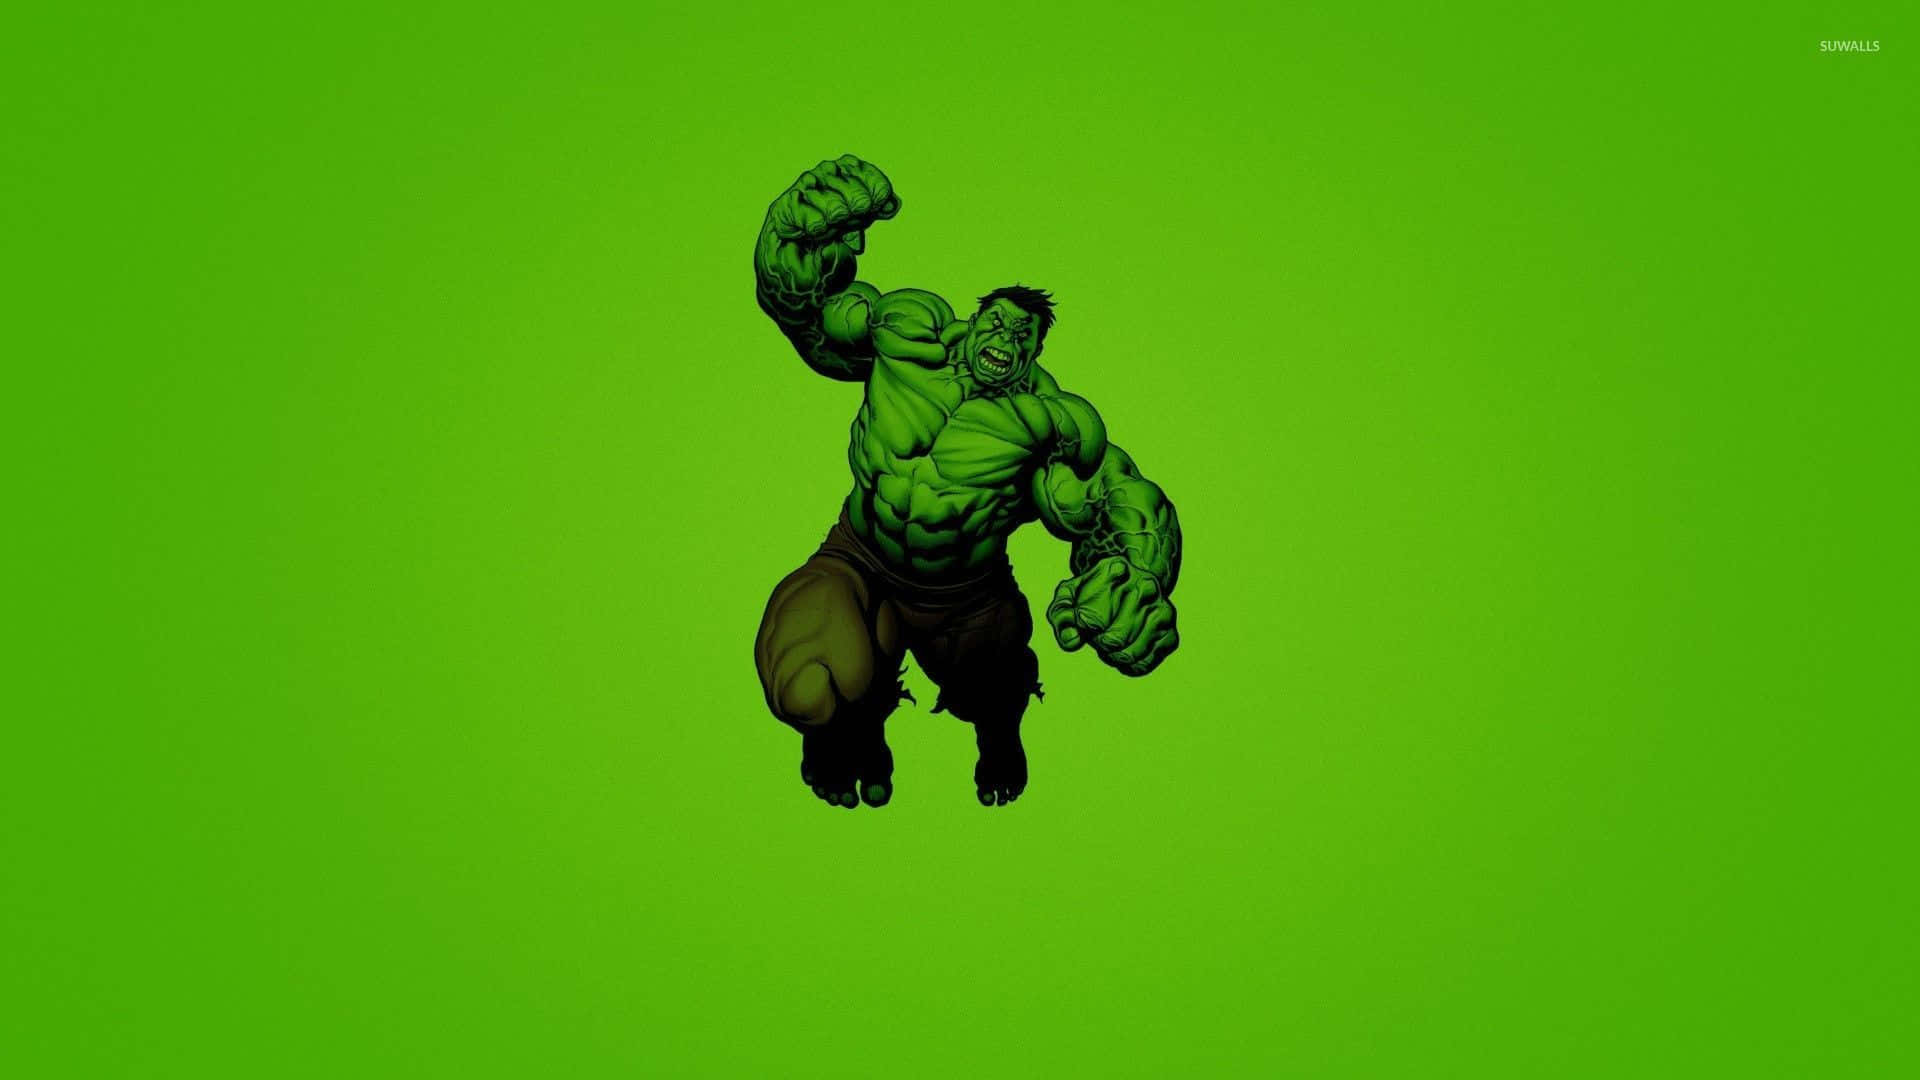 Hulk,der Mächtige Marvel-held